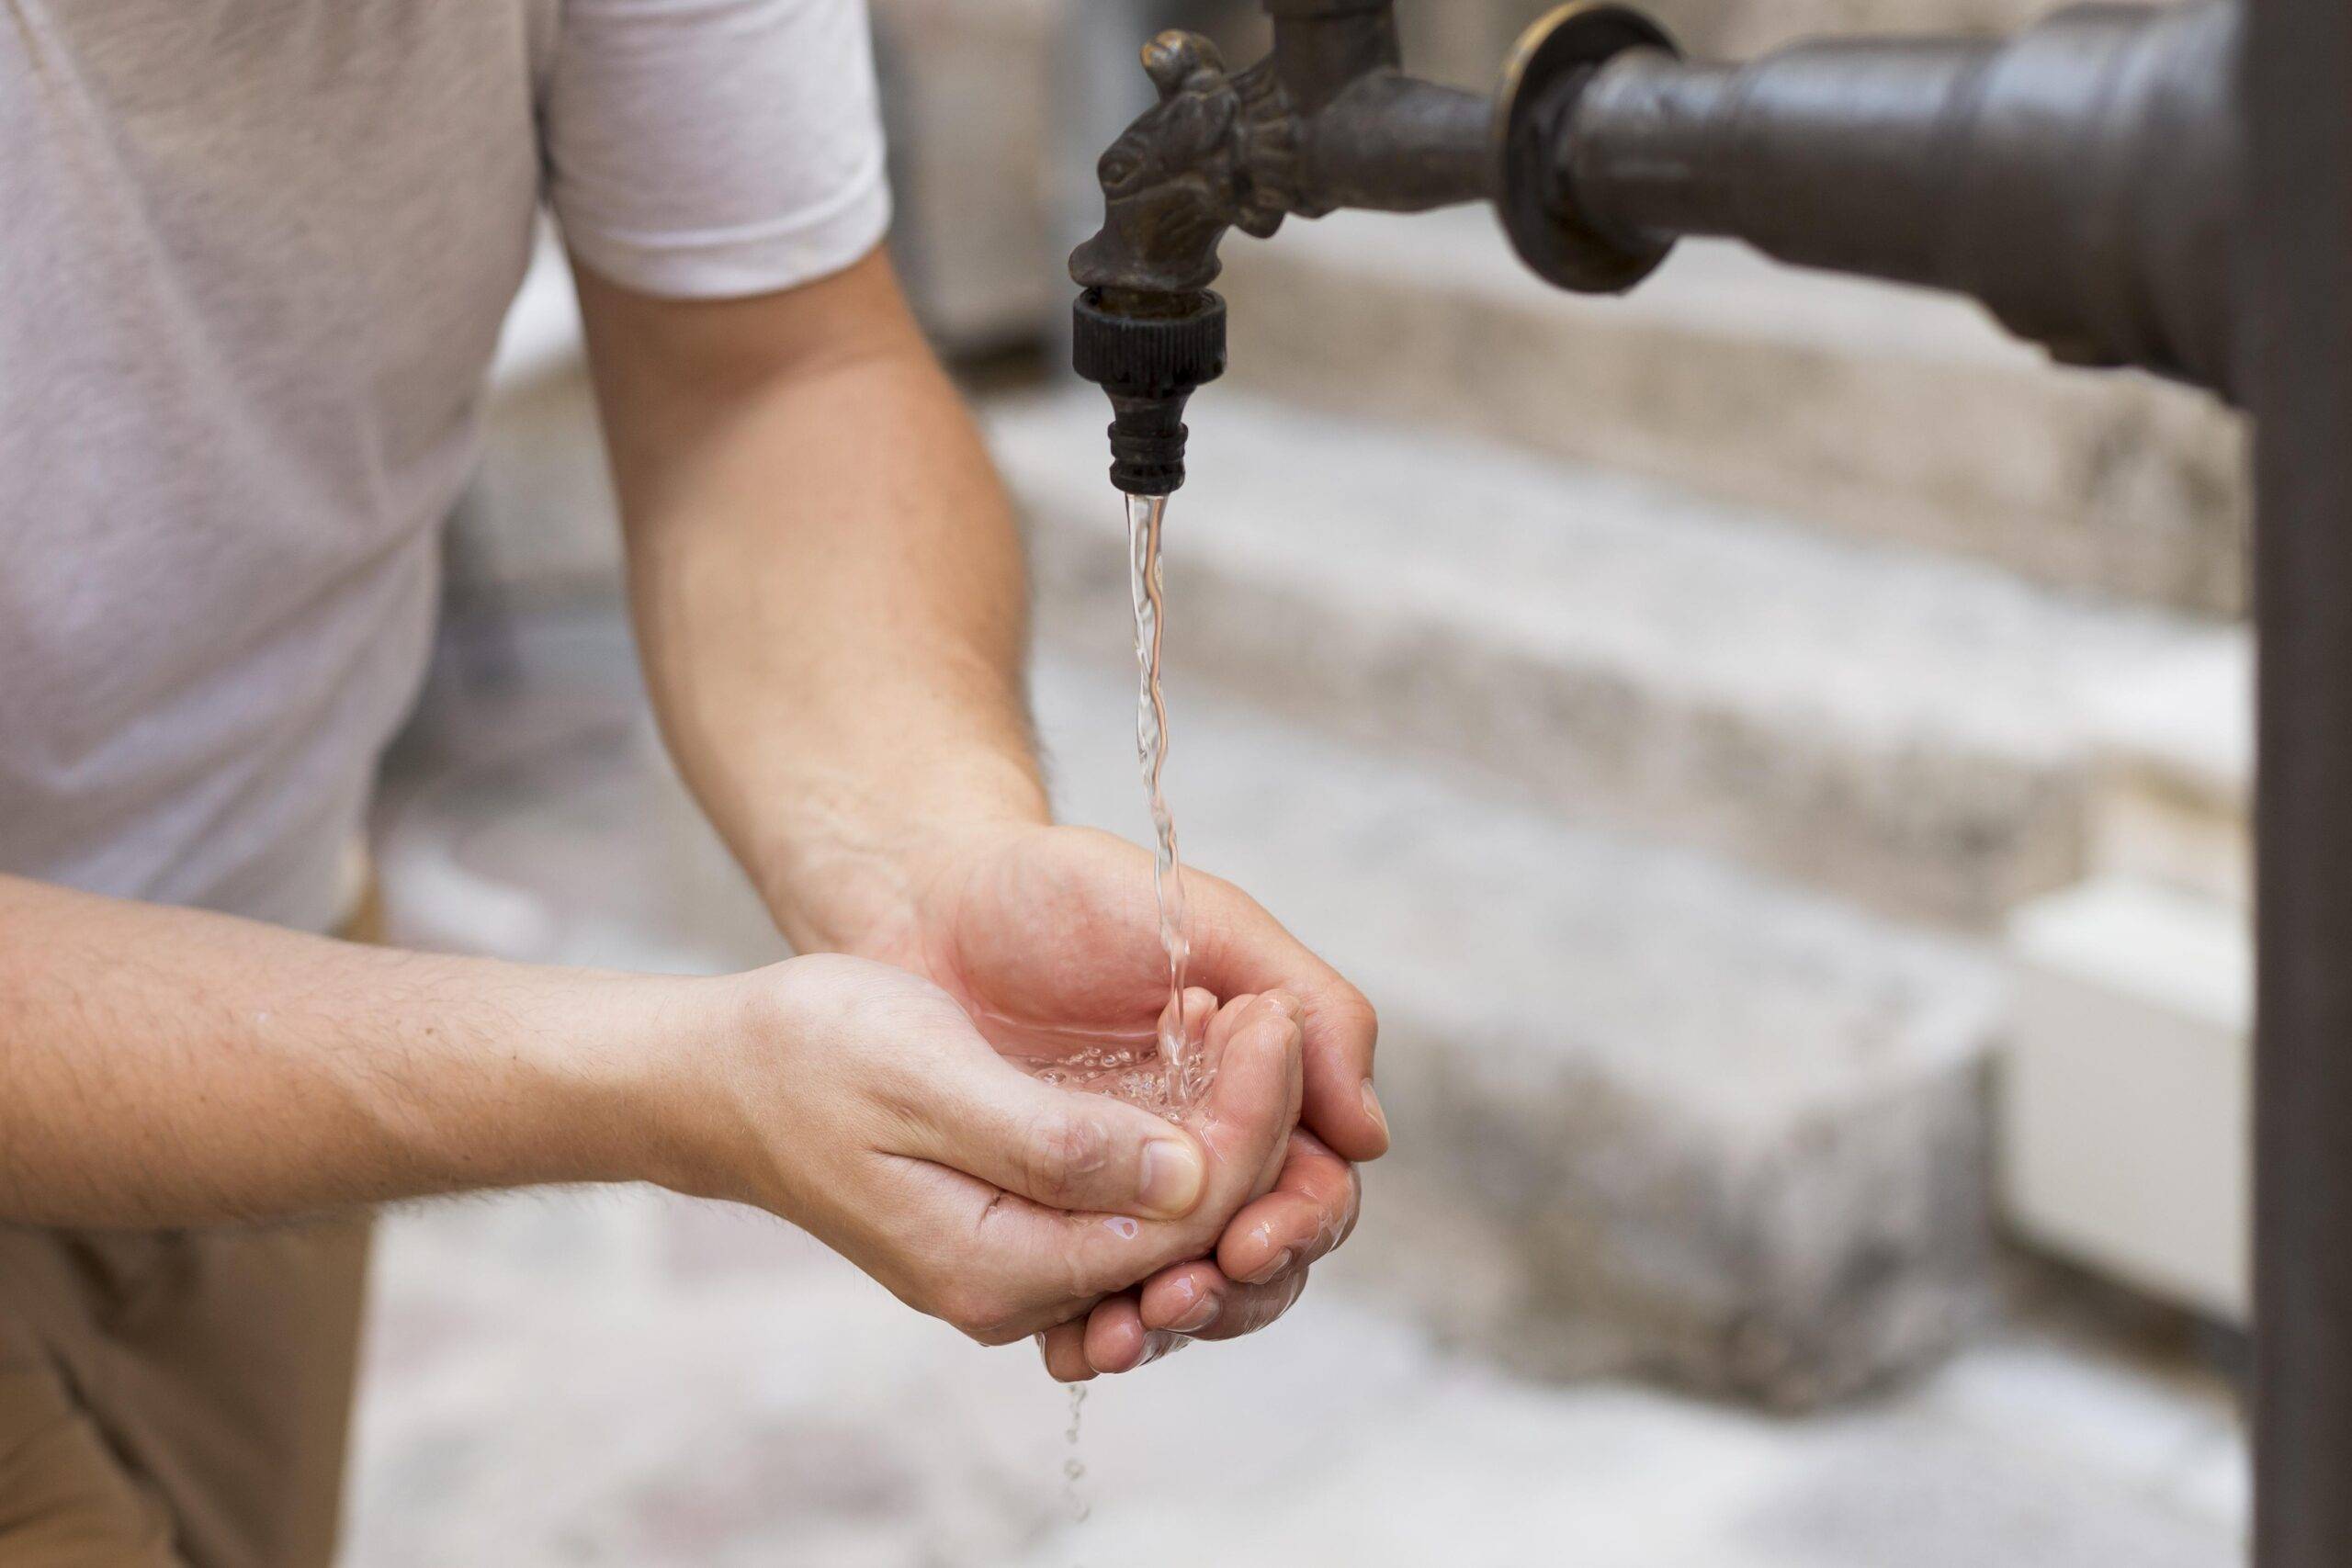 Servicio de agua potable es intermitente en sectores de Cuenca